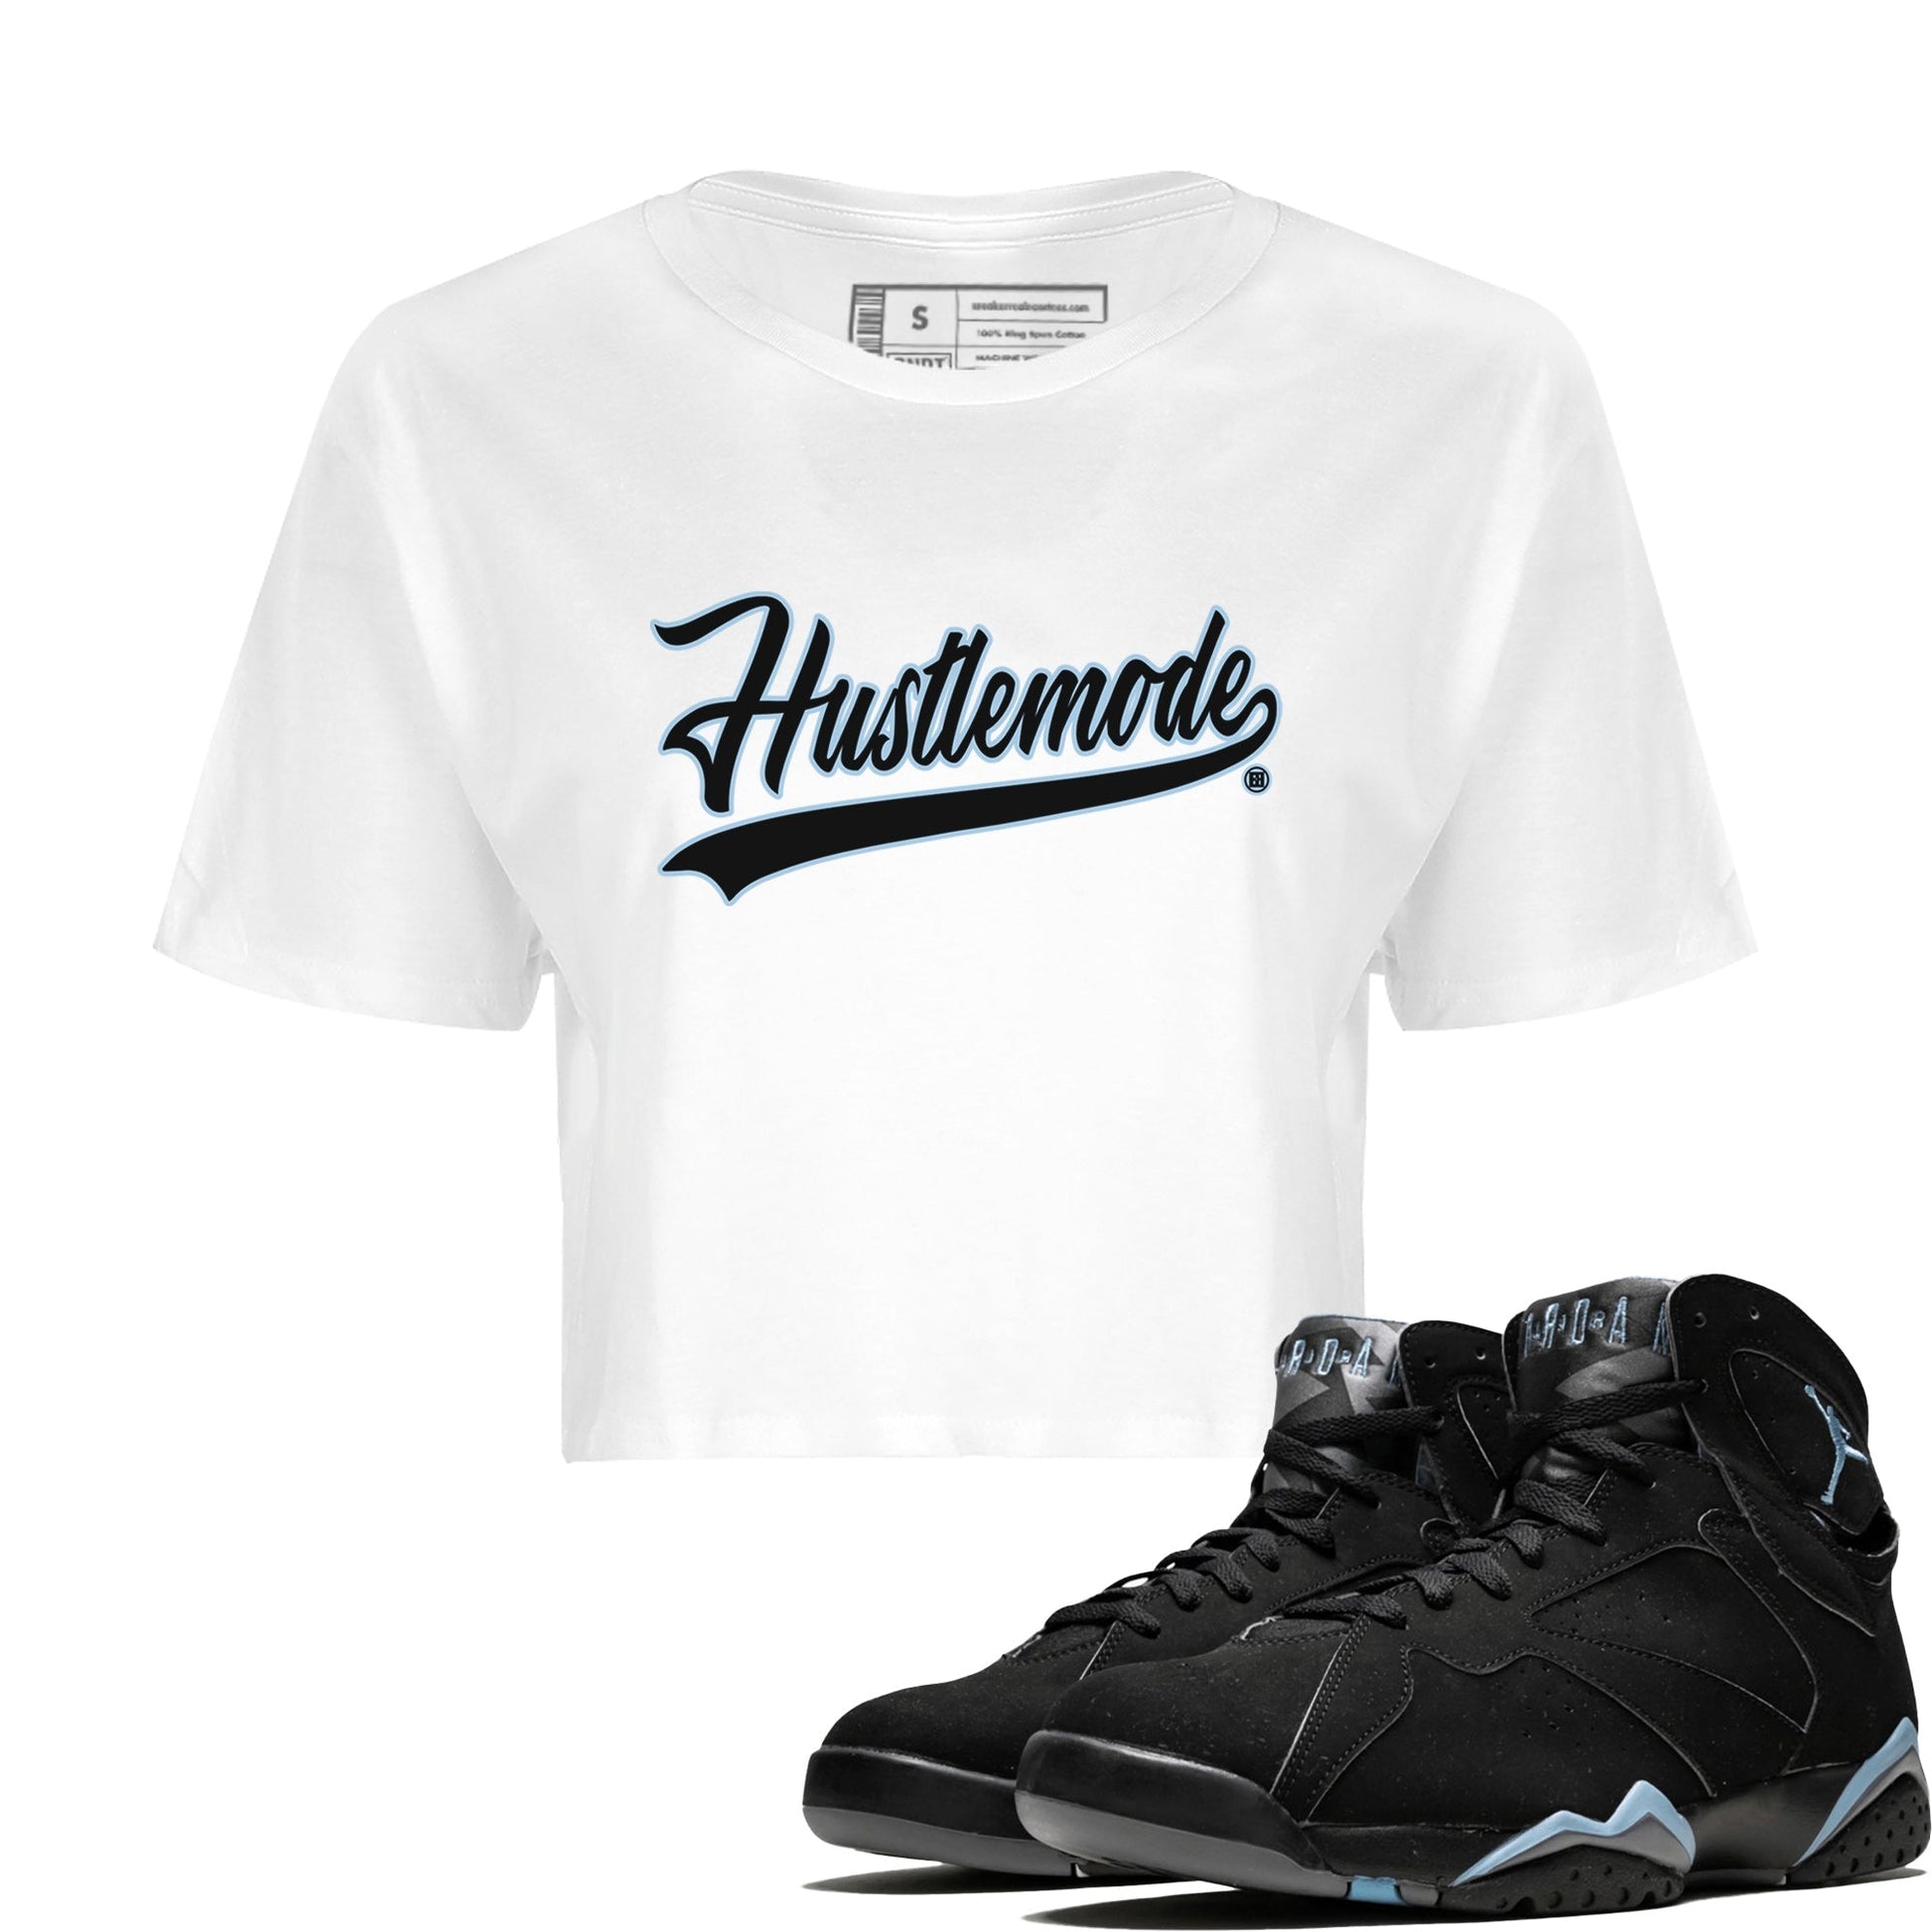 Jordan 7 Chambray T-Shirt Hustle Mode Sneaker Tees Air Jordan 7 Chambray Sneaker Release Tees Women's Shirts White 1